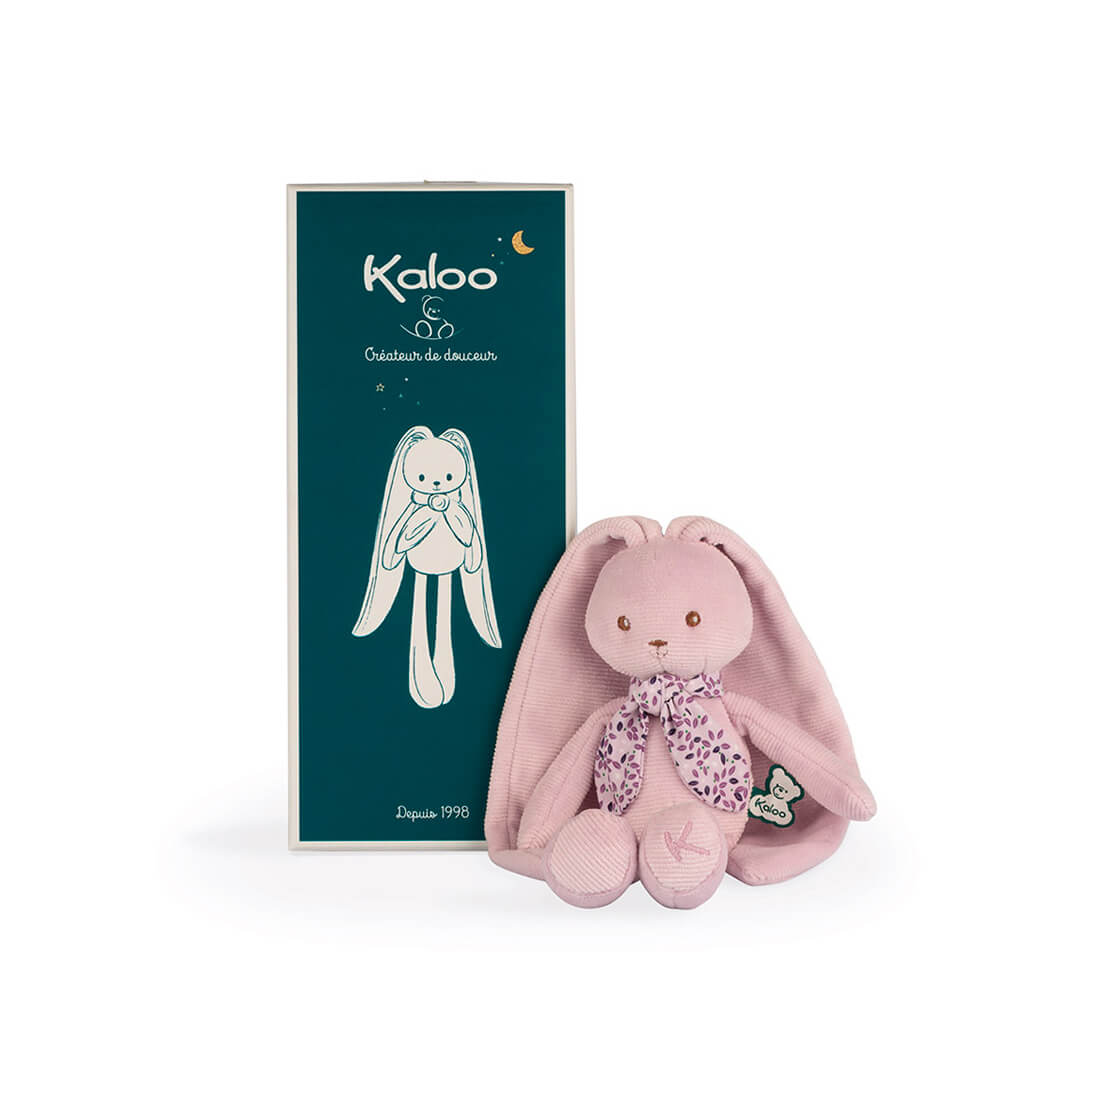 Мягкая игрушка Kaloo "Кролик", серия "Lapinoo" розовый, маленький, 25 см